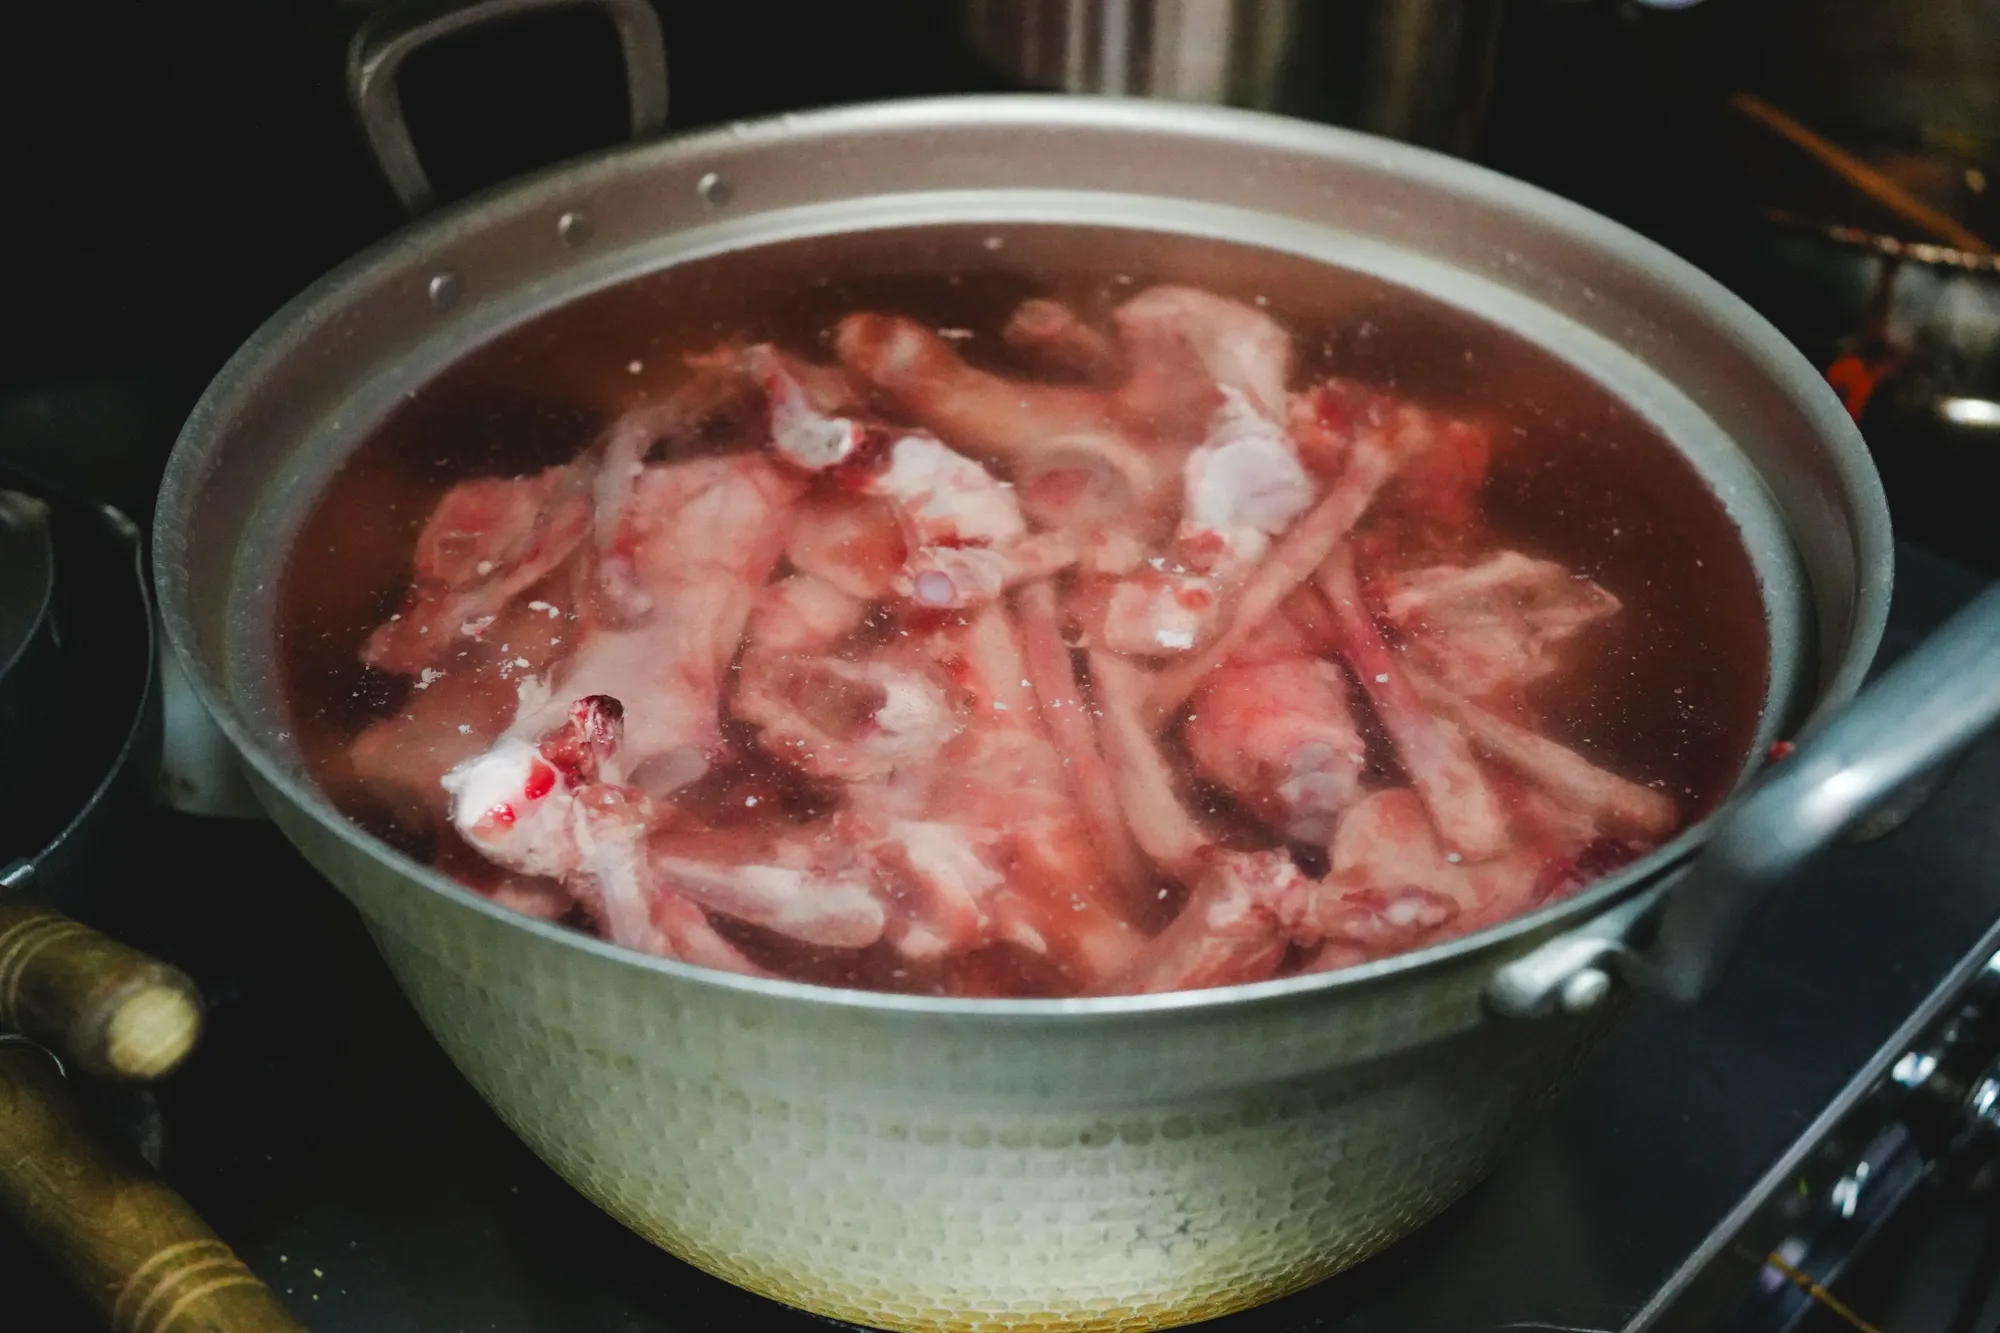 Preparation of soup (Tonkotsu or pork bone soup)